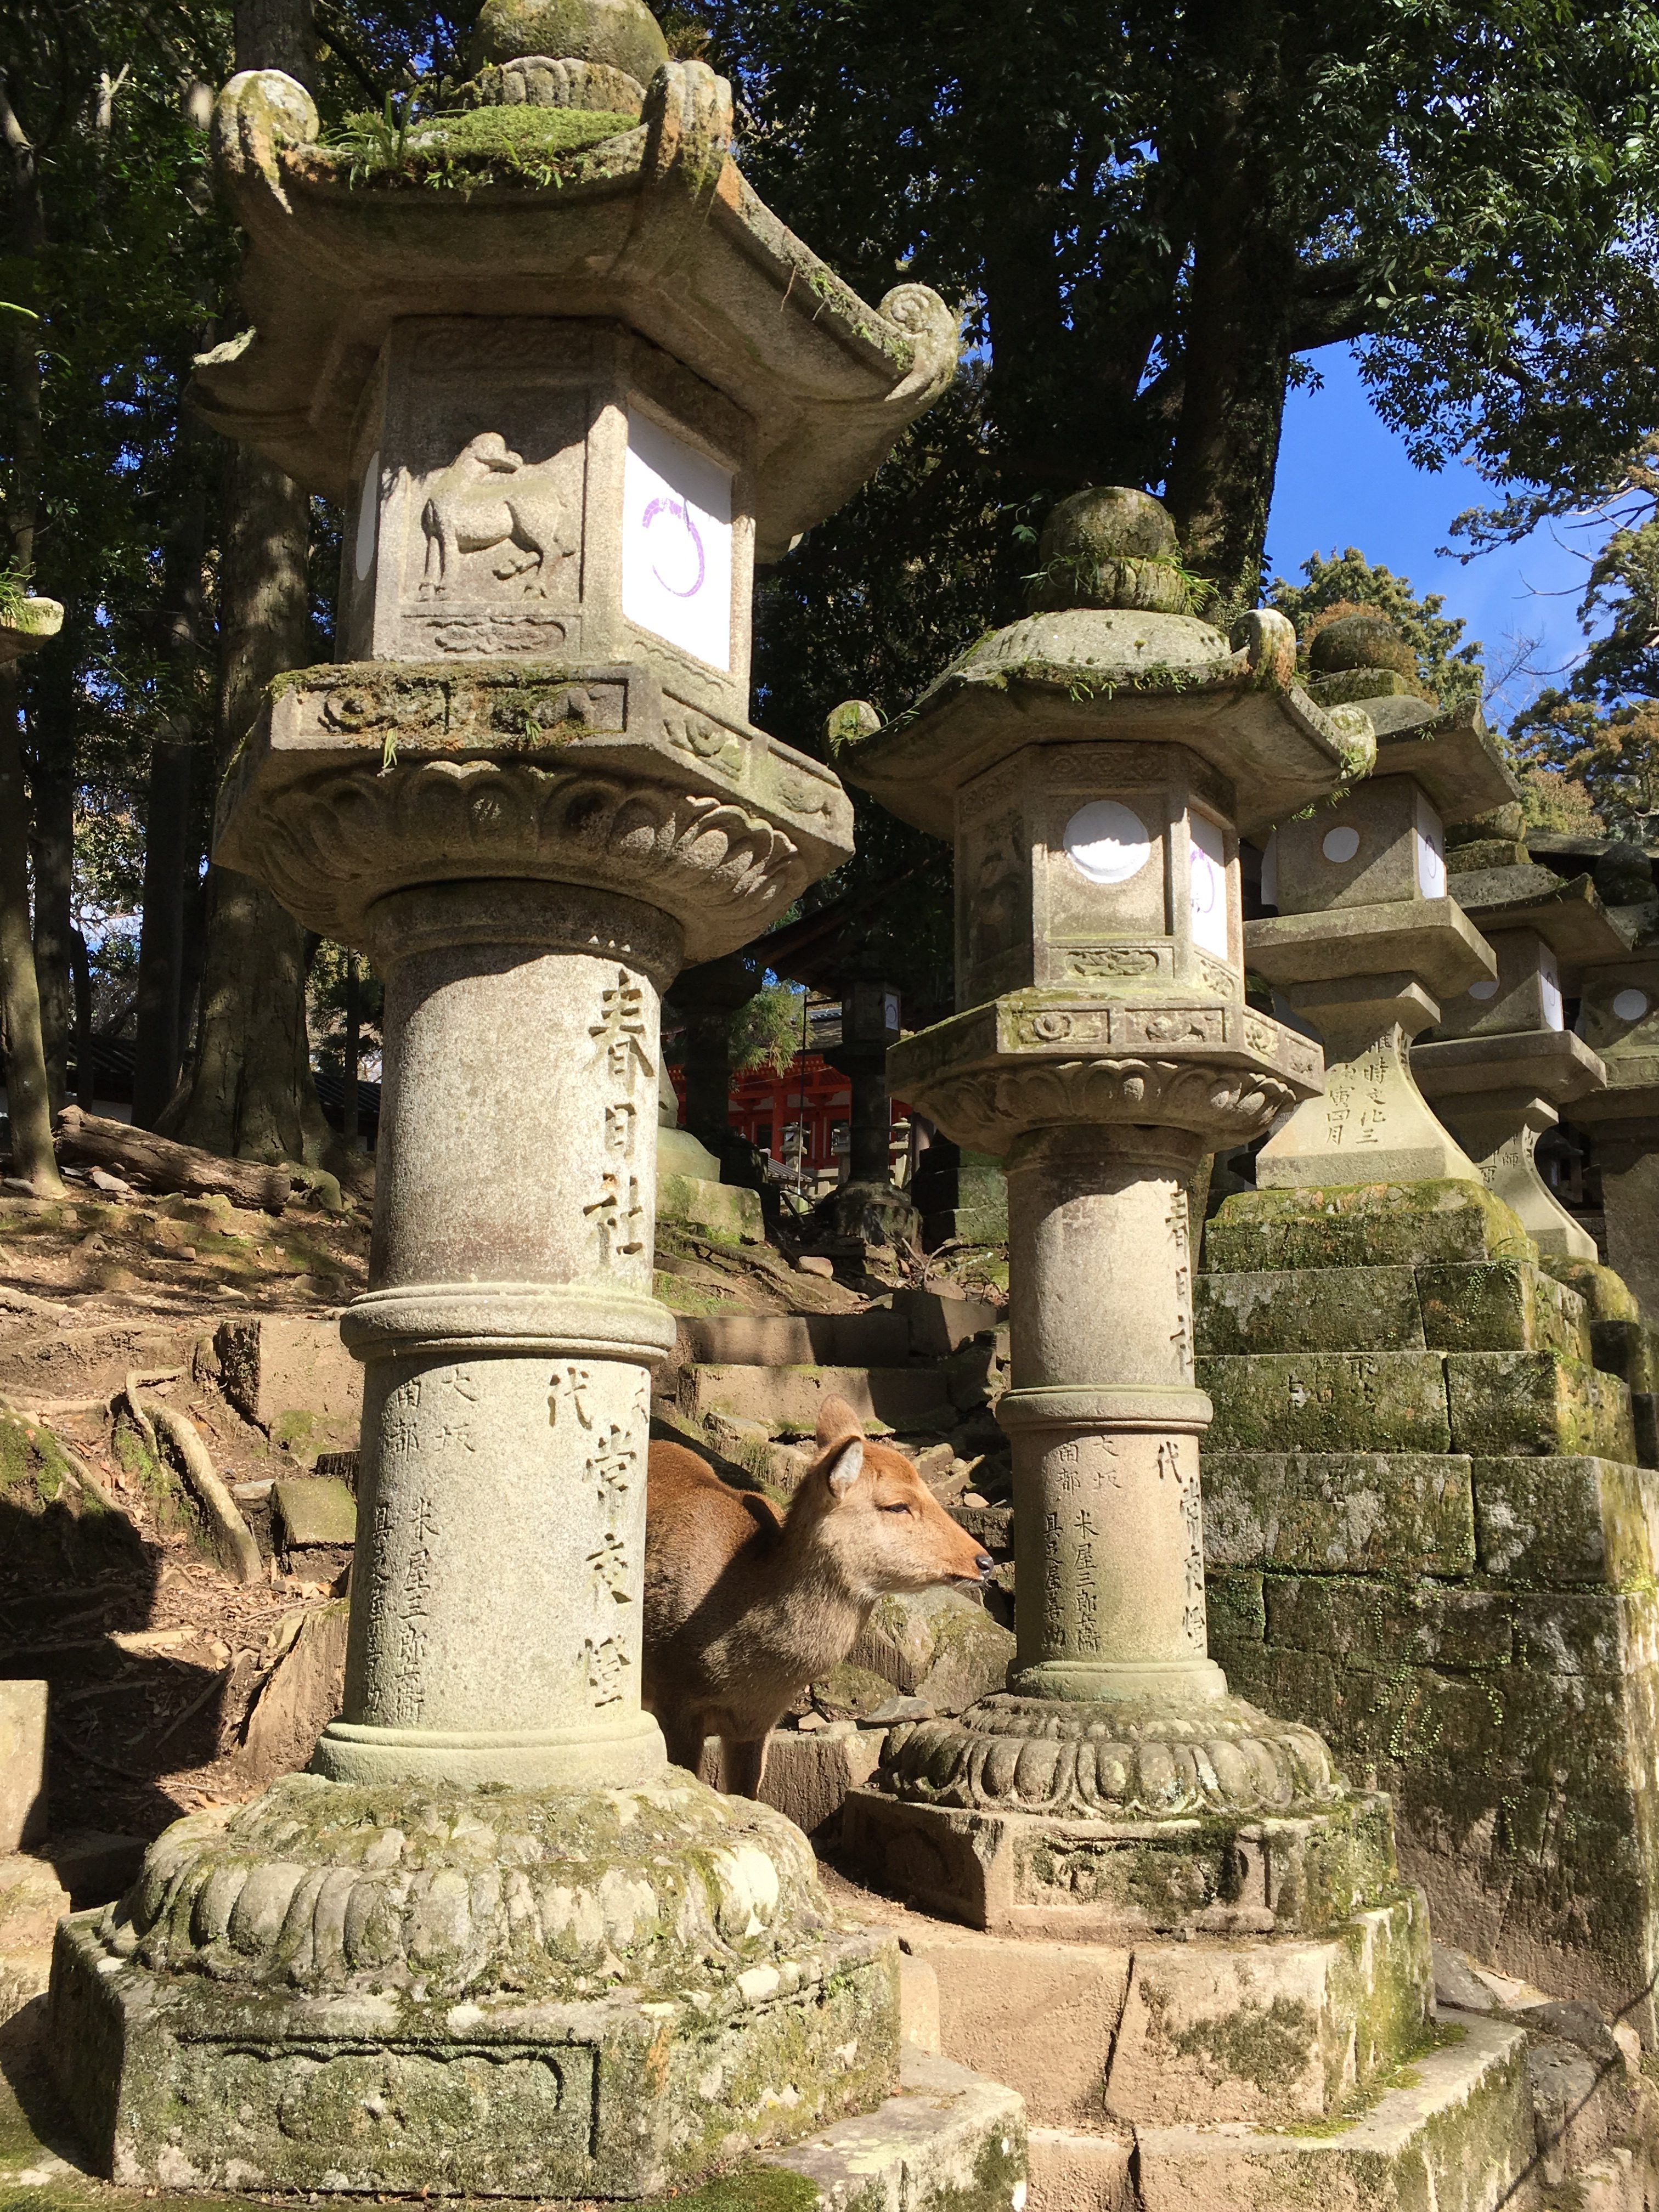 Japanese deer between two stone lanterns at kasuga taisha